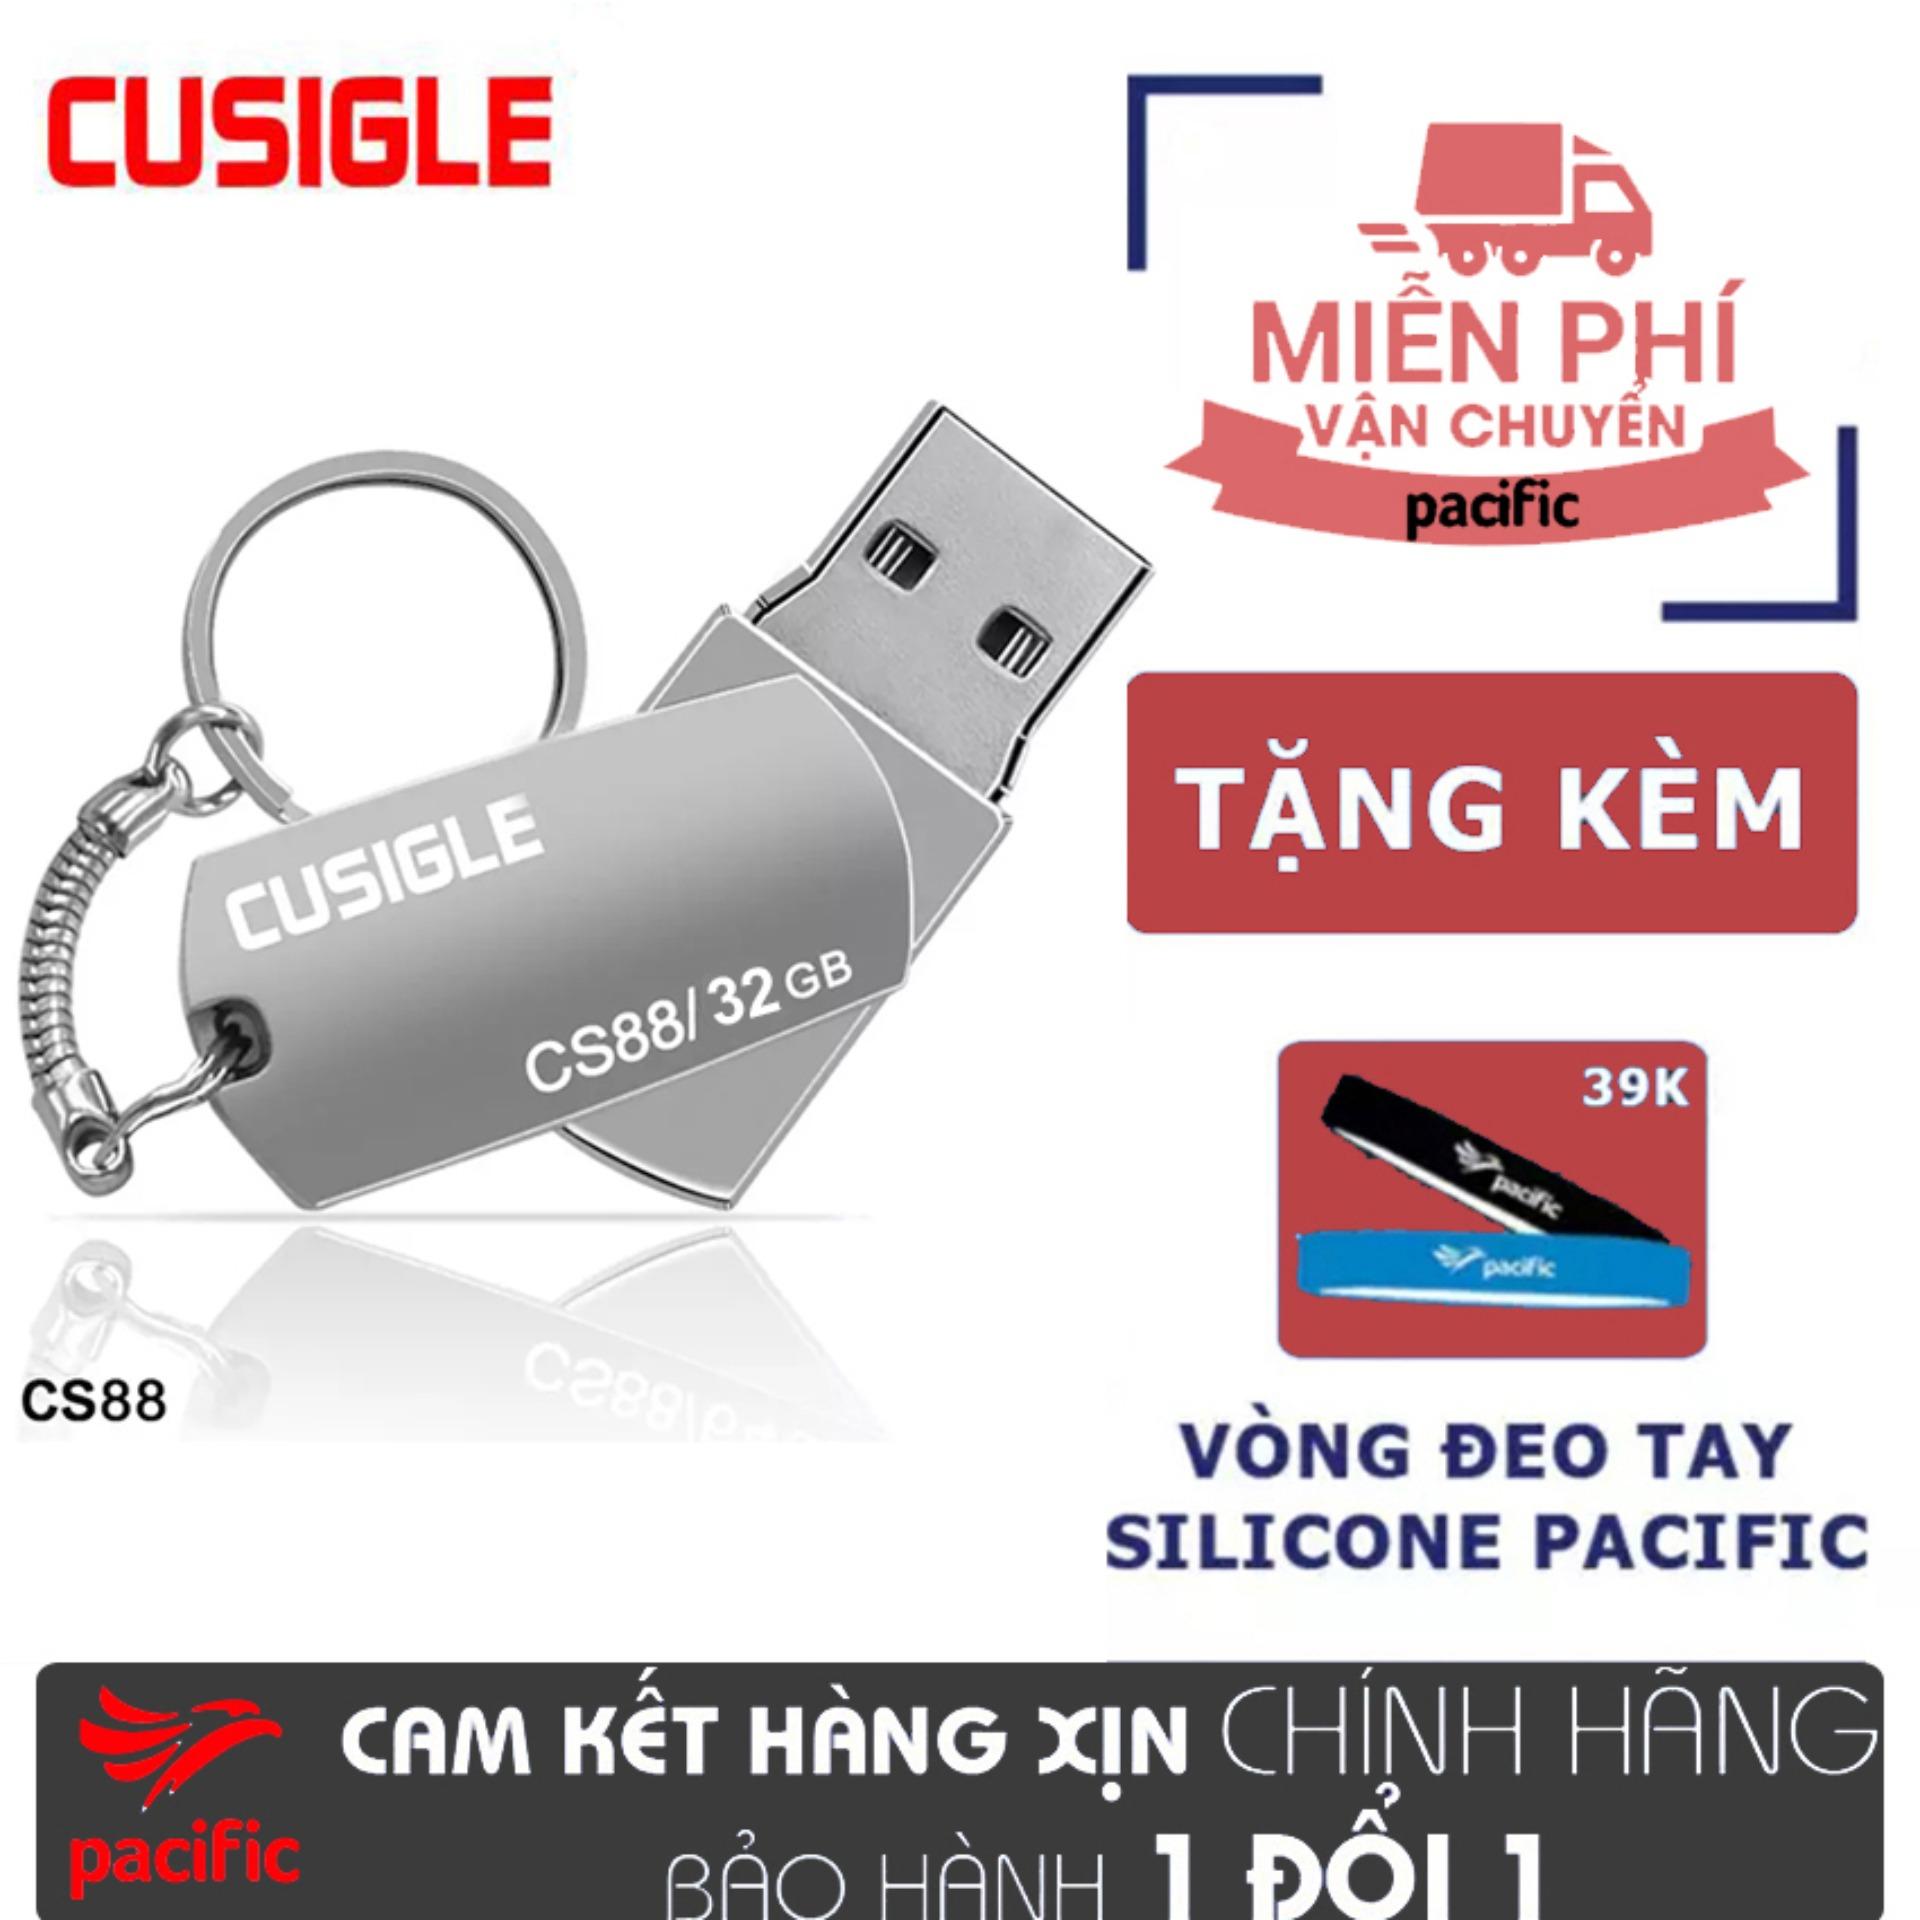 USB 32Gb Cusigle CS88 2018 - Tặng Vòng đeo tay Silicone Pacific